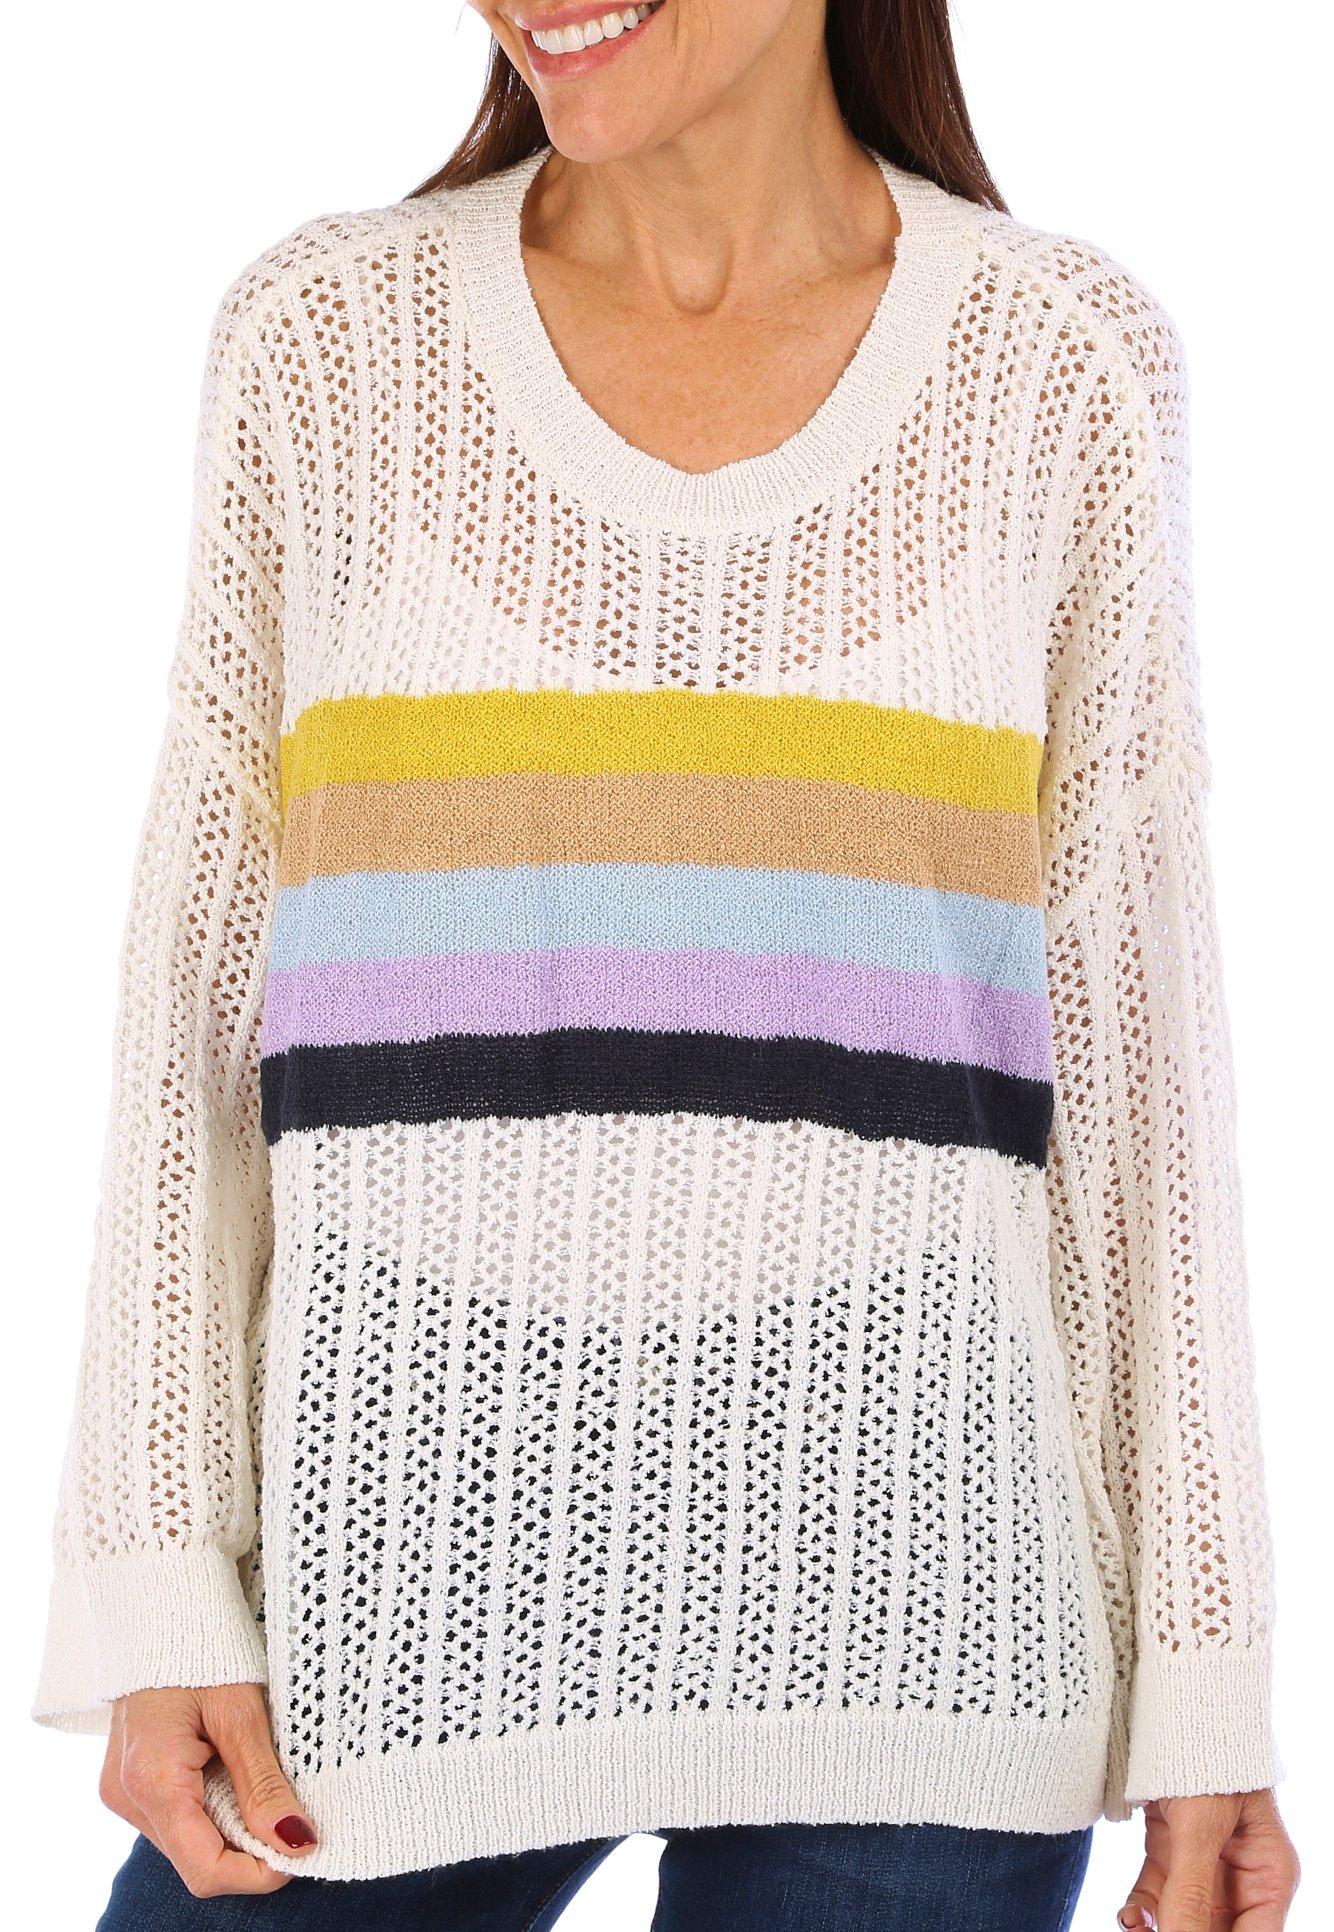 Bunulu Womens Open Wave Stripe Fashion Sweater